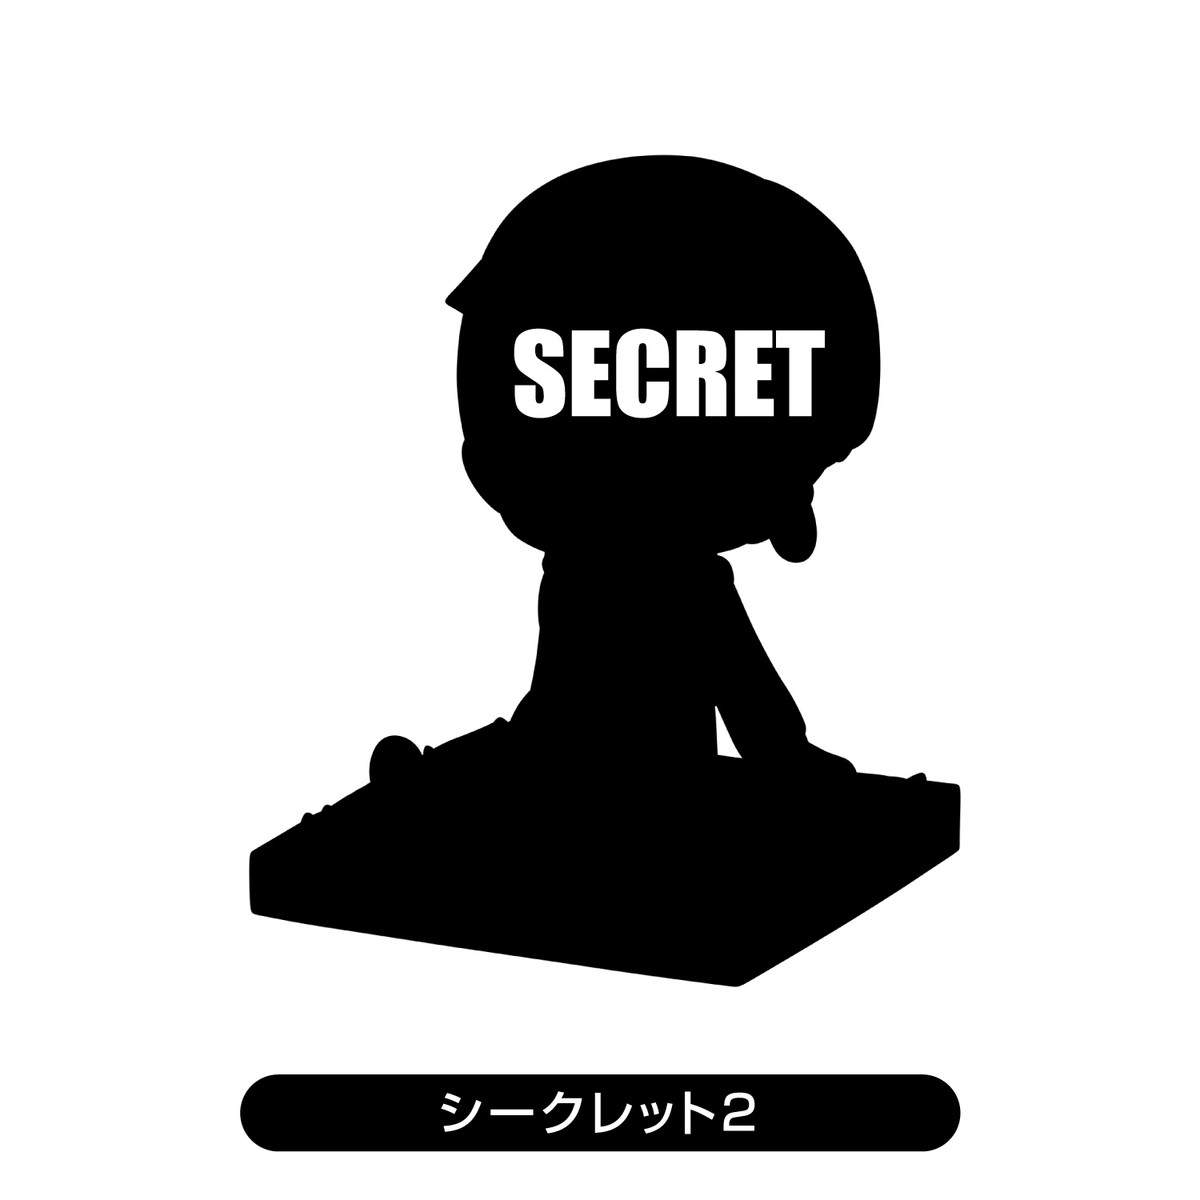 「東京リベンジャーズ トレーディングミニフィギュア」のフィギュア画像